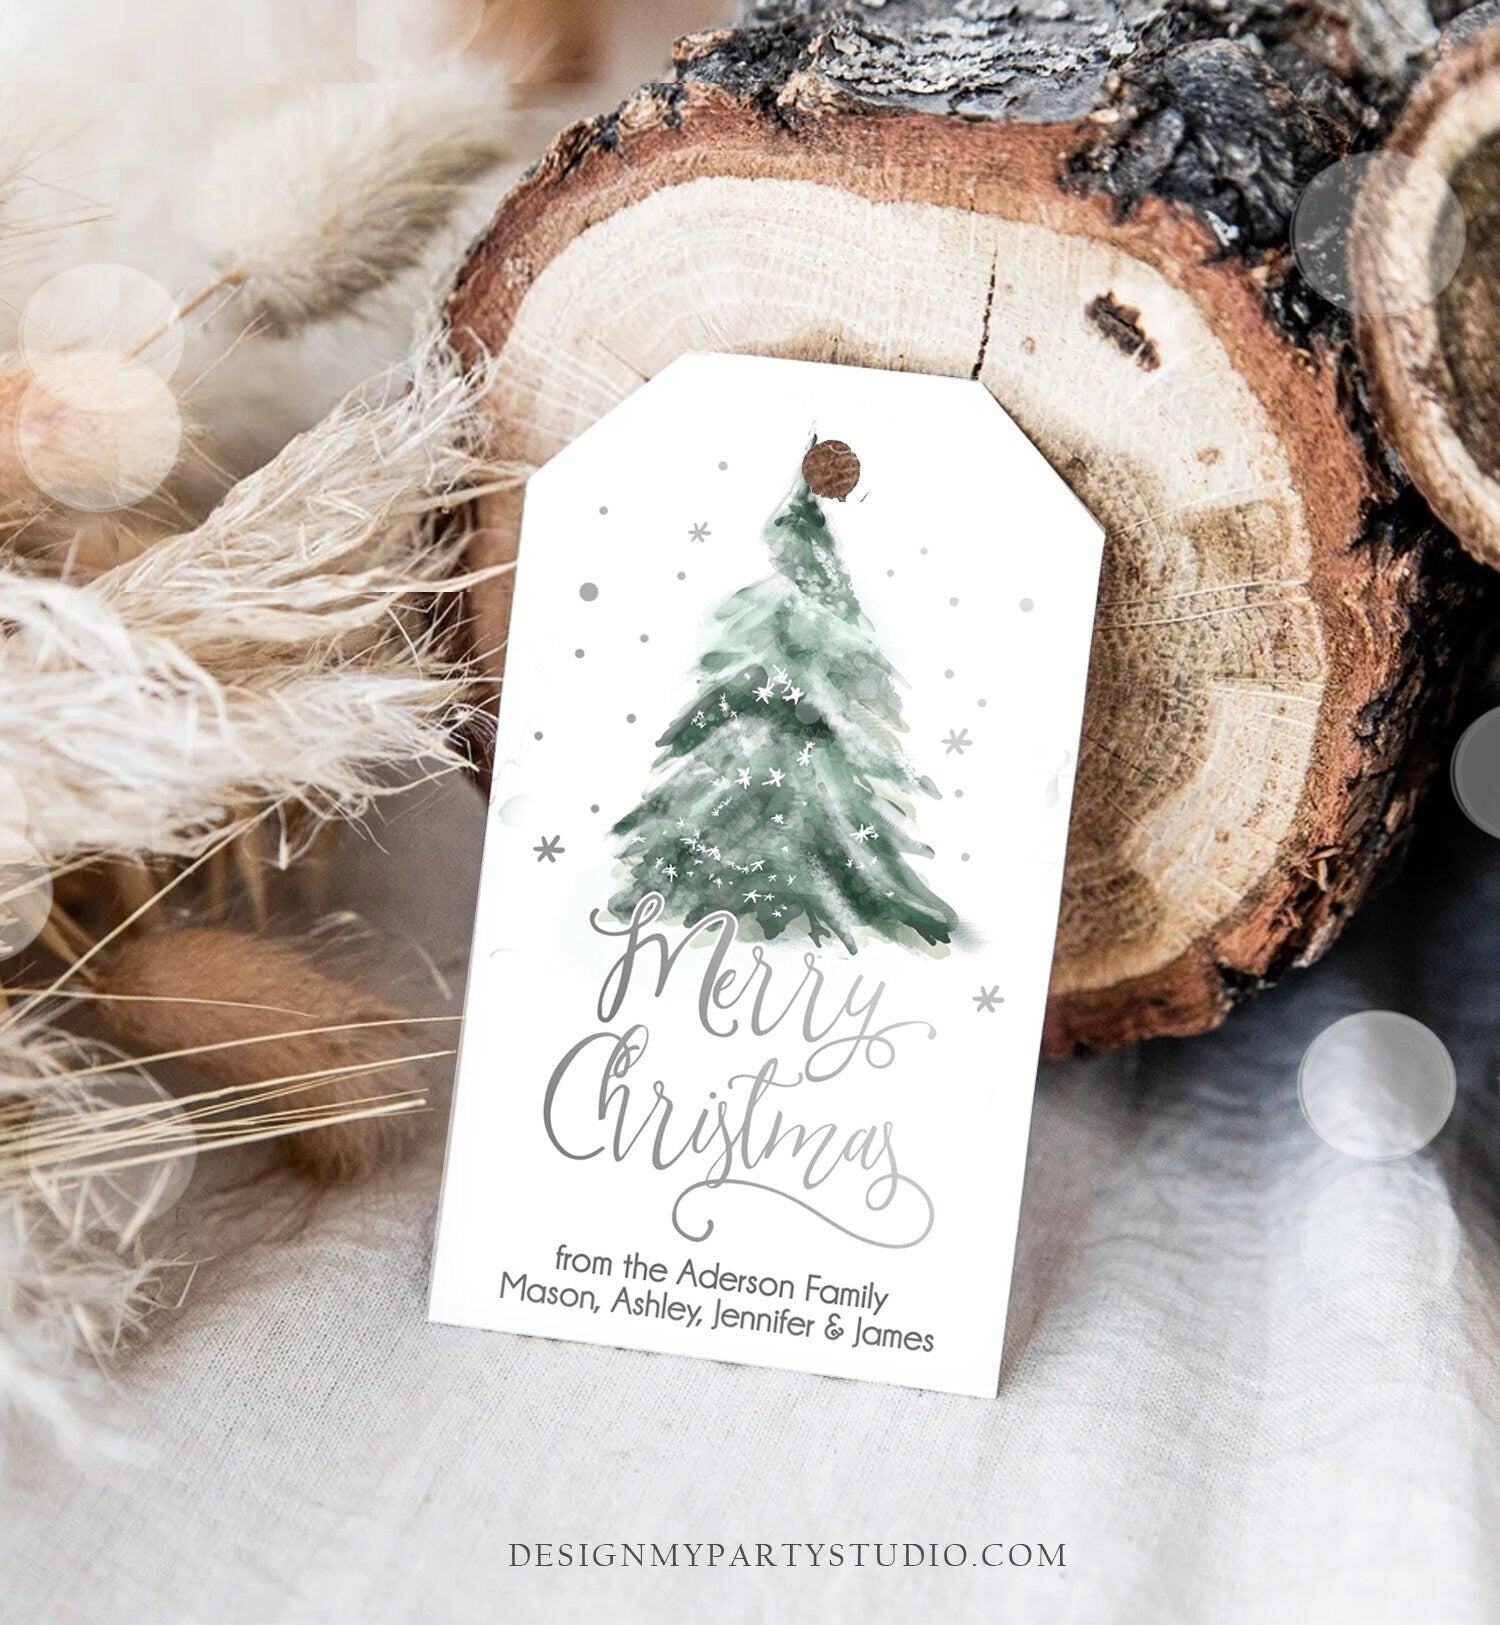 Editable Christmas Favor Tags Holiday Gift Tags Merry Christmas Holiday Tags Holiday Labels Tree Silver Download Printable Corjl 0363 0443